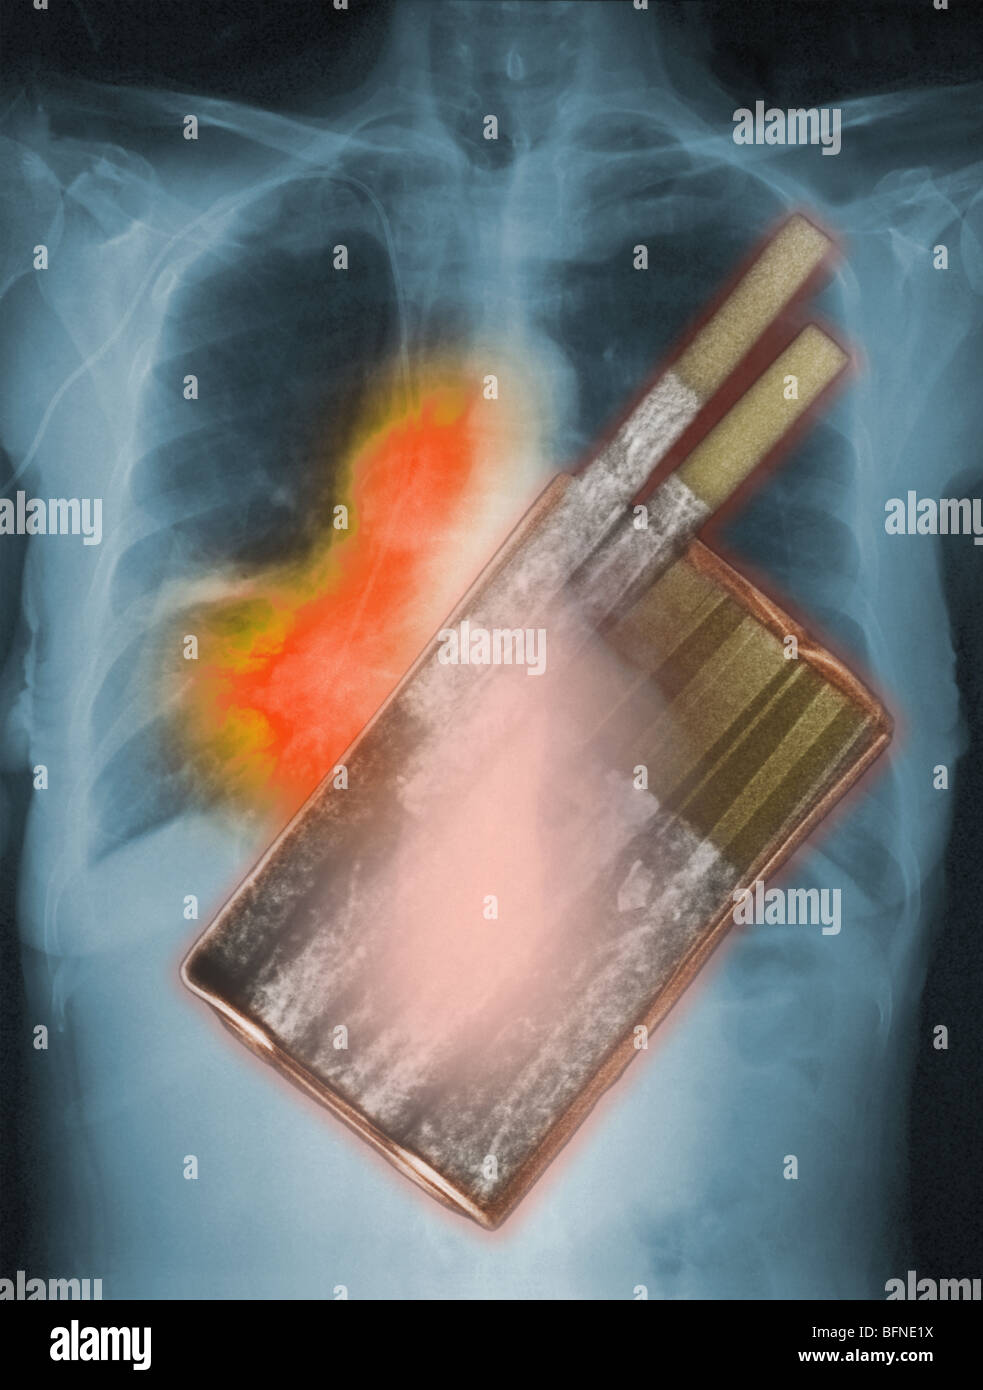 Sigarette, la principale causa di cancro ai polmoni, sovrapposto ad una radiografia del torace che mostra il cancro ai polmoni Foto Stock